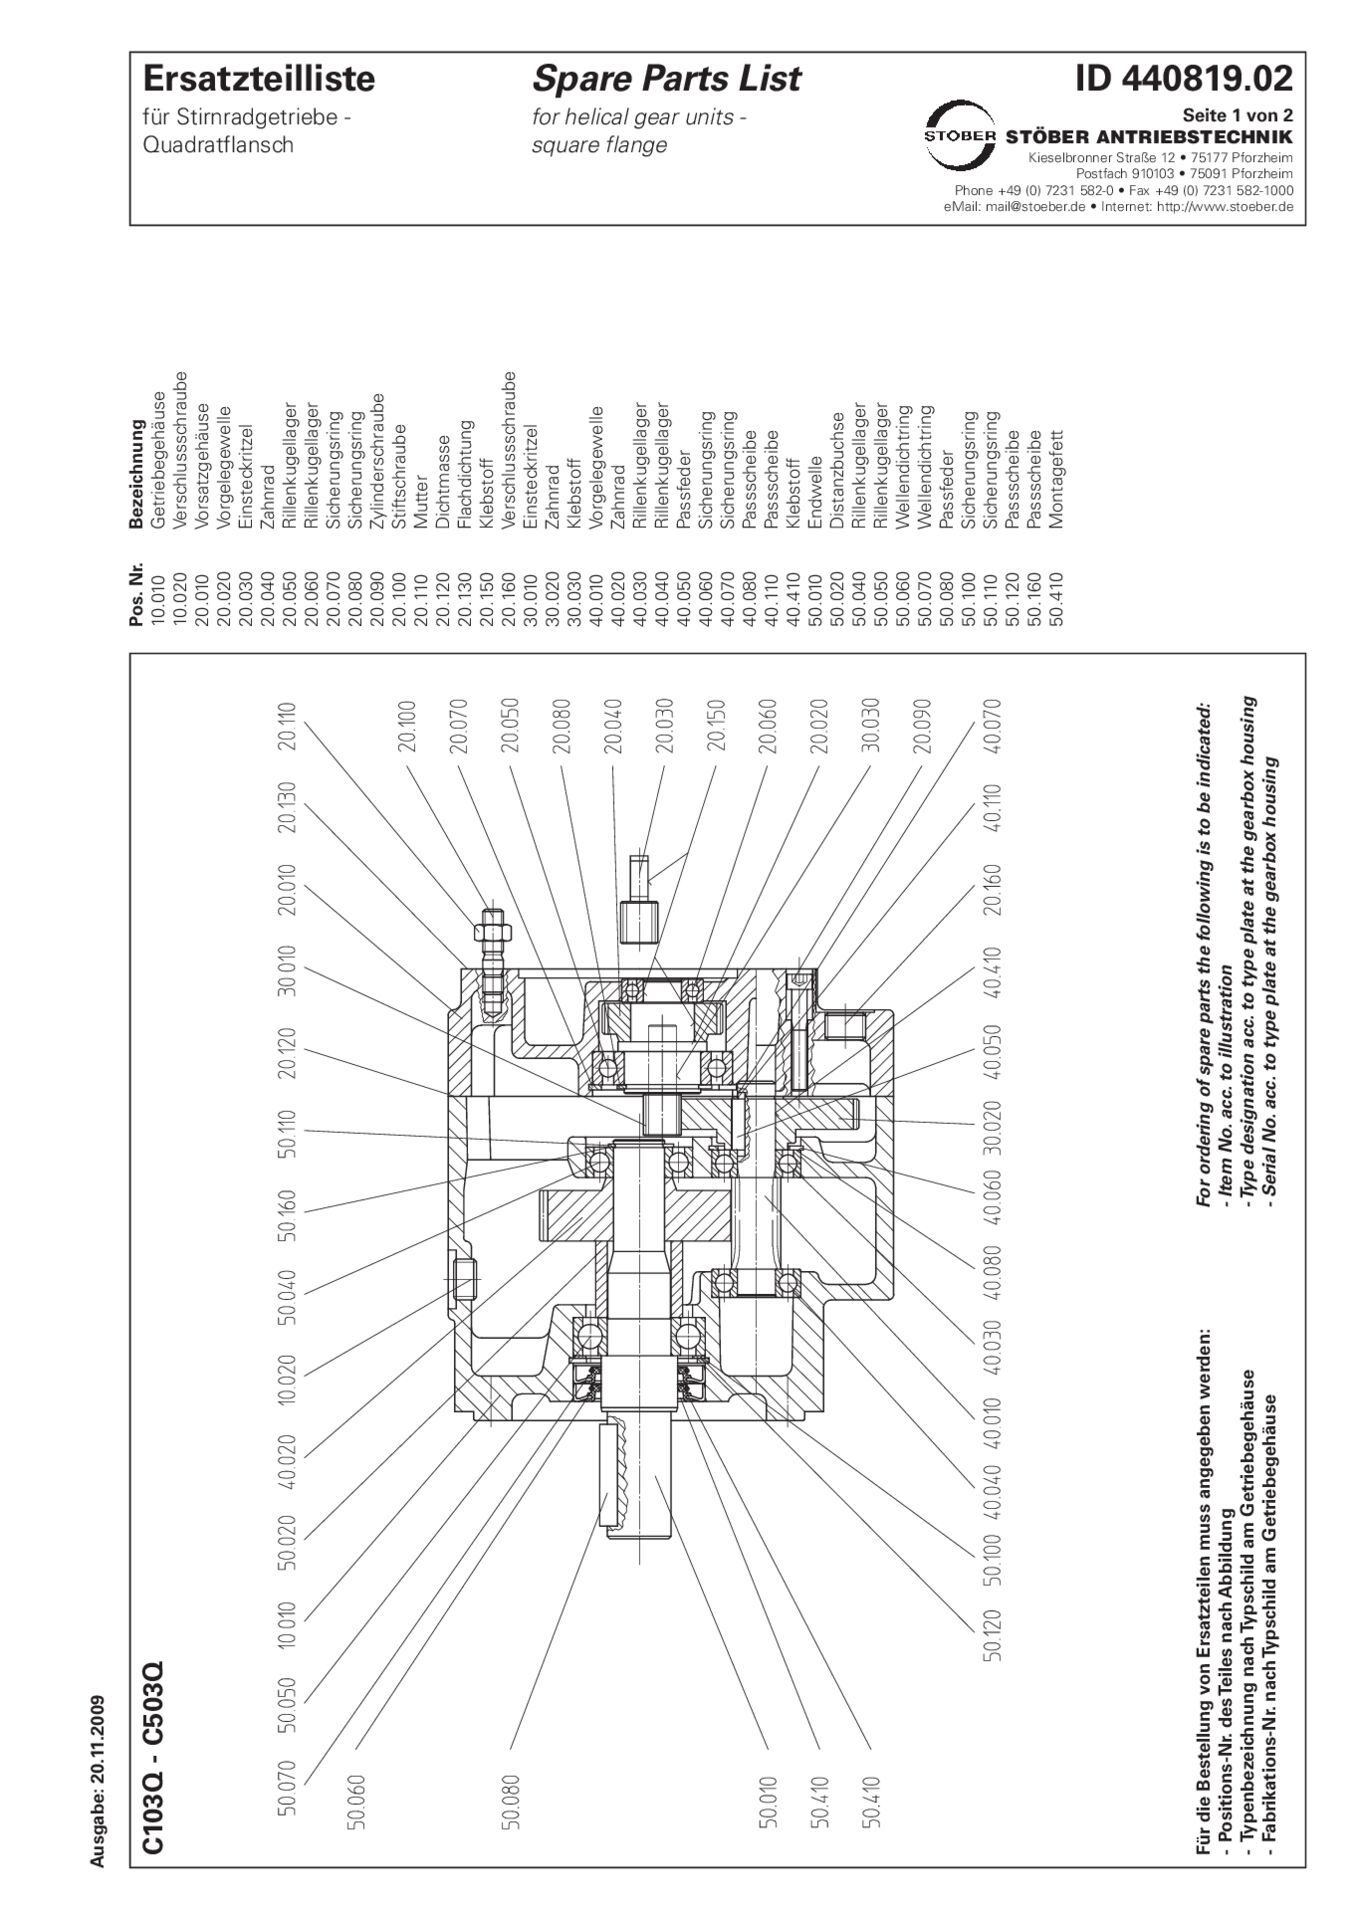 Replacement parts list helical gear units C103 C203 C303 C403 C503 Q